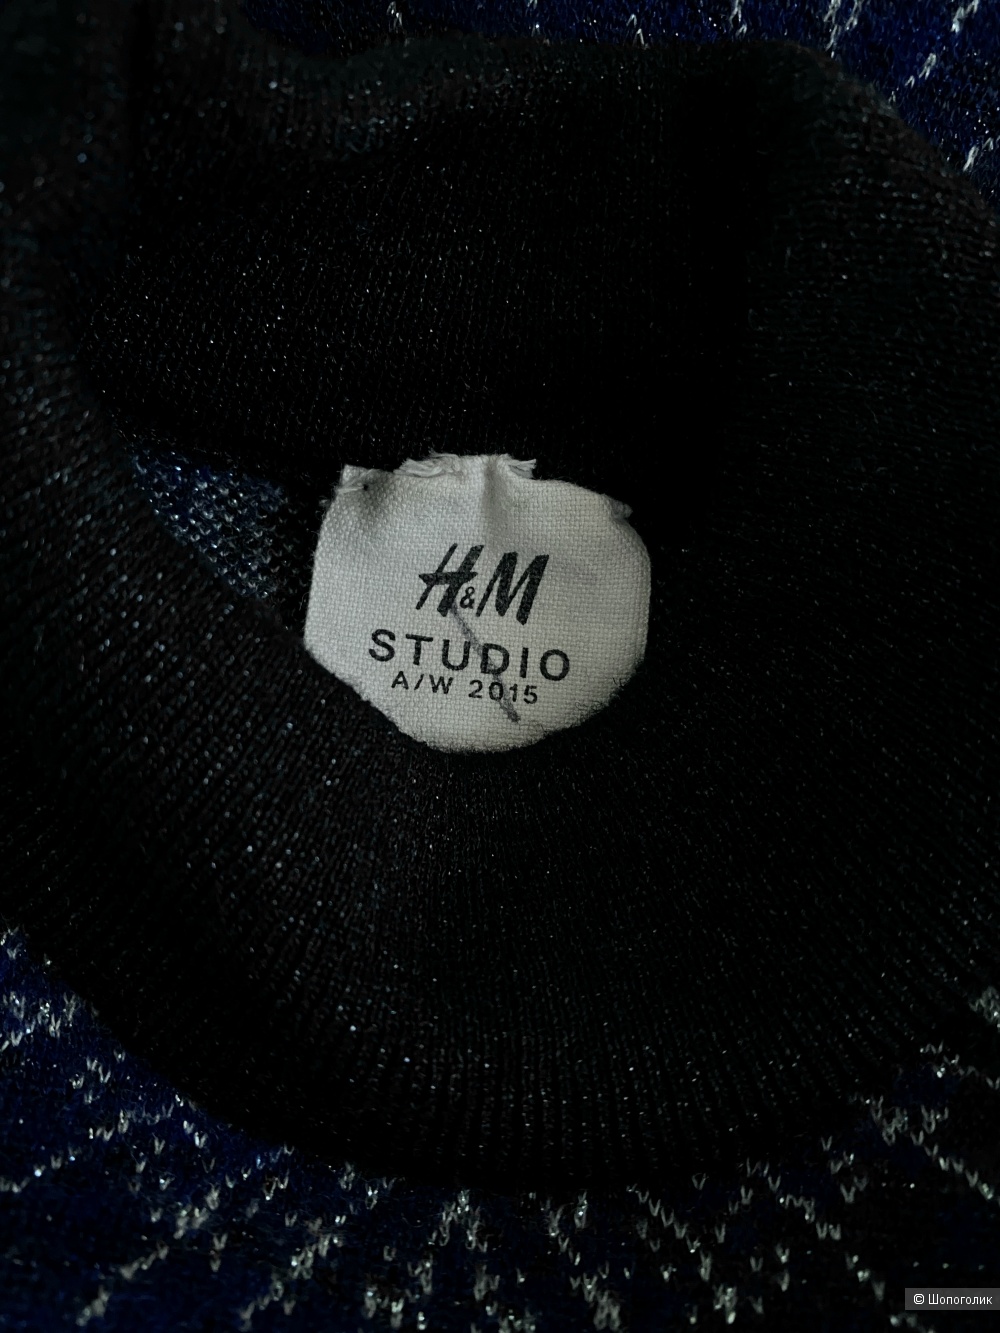 Водолазка H&M Studio, размер xs-s.